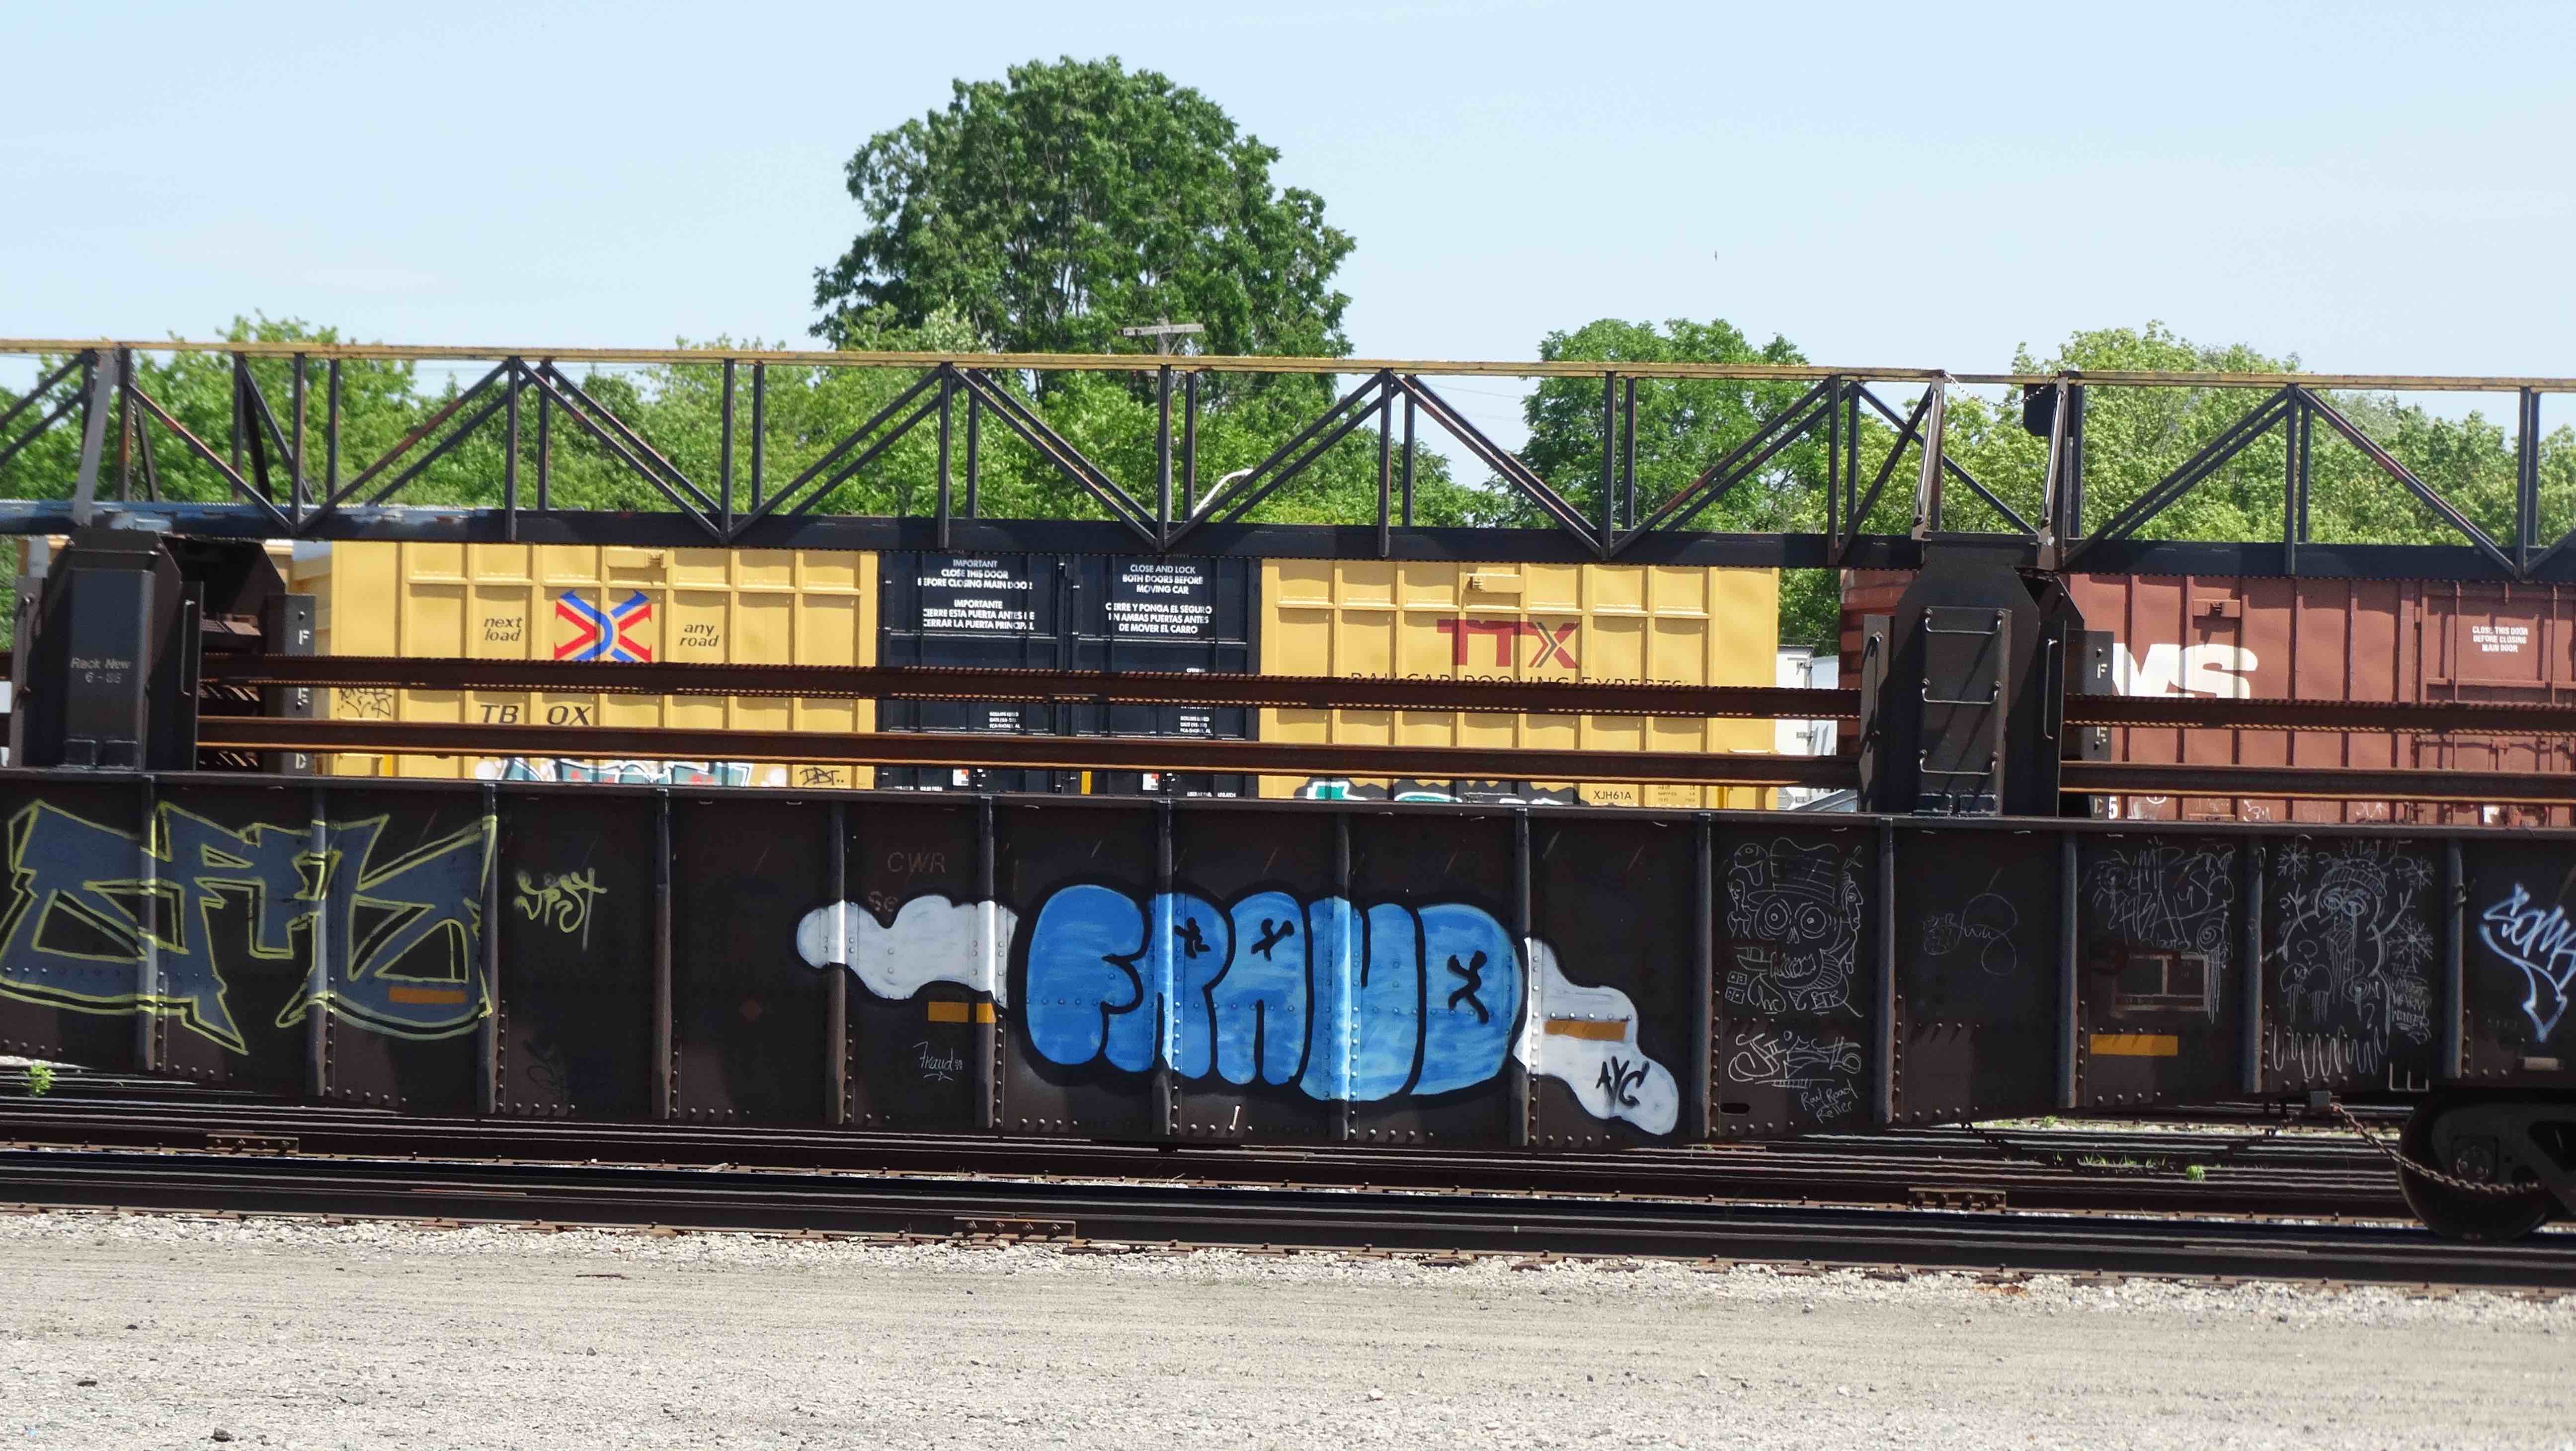 smiths-falls-CWR-train-2-medium